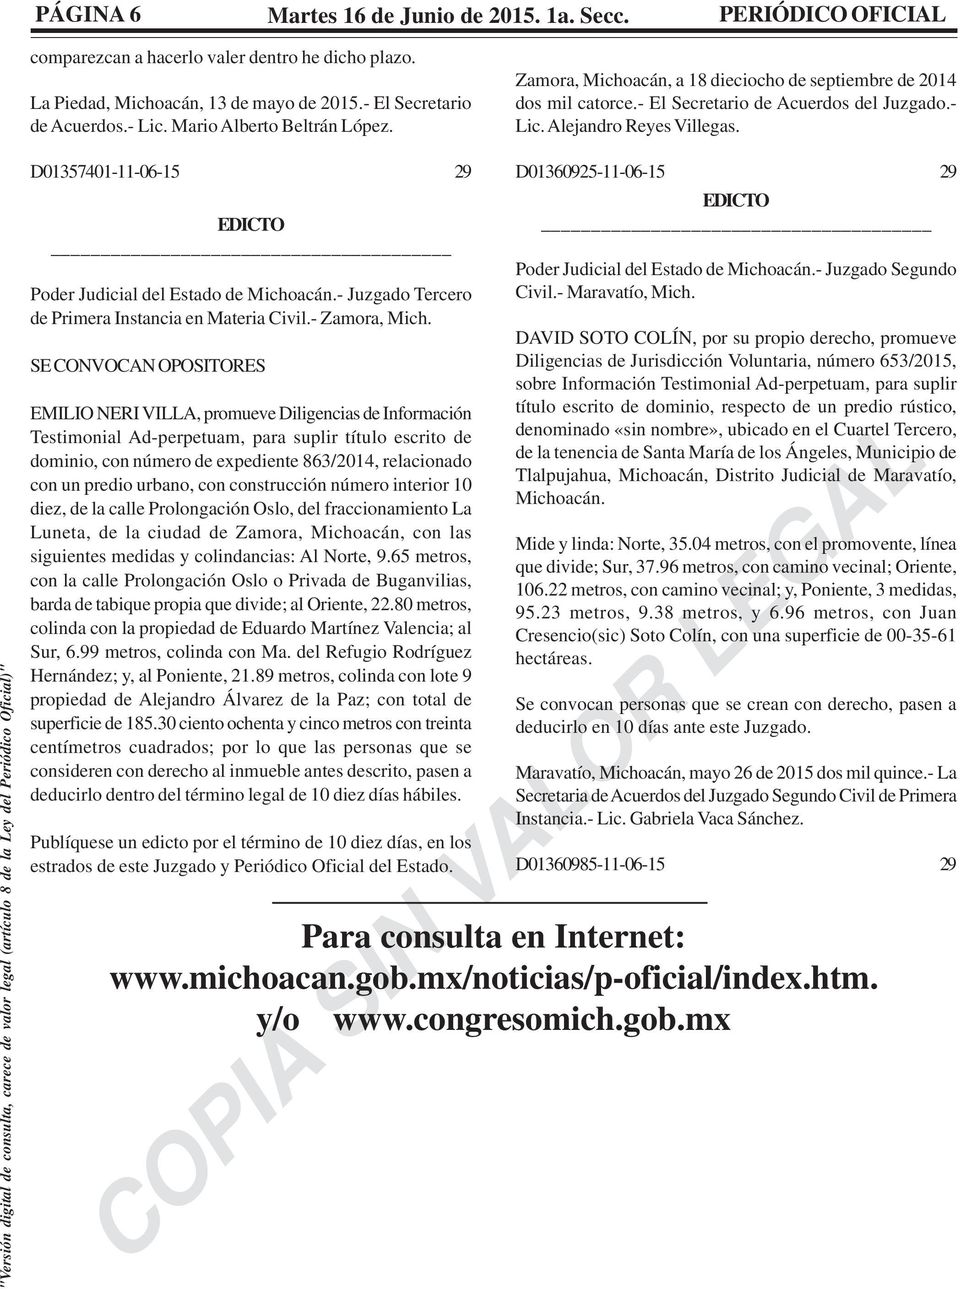 D01357401-11-06-15 29 _ Poder Judicial del Estado de Michoacán.- Juzgado Tercero de Primera Instancia en Materia Civil.- Zamora, Mich.